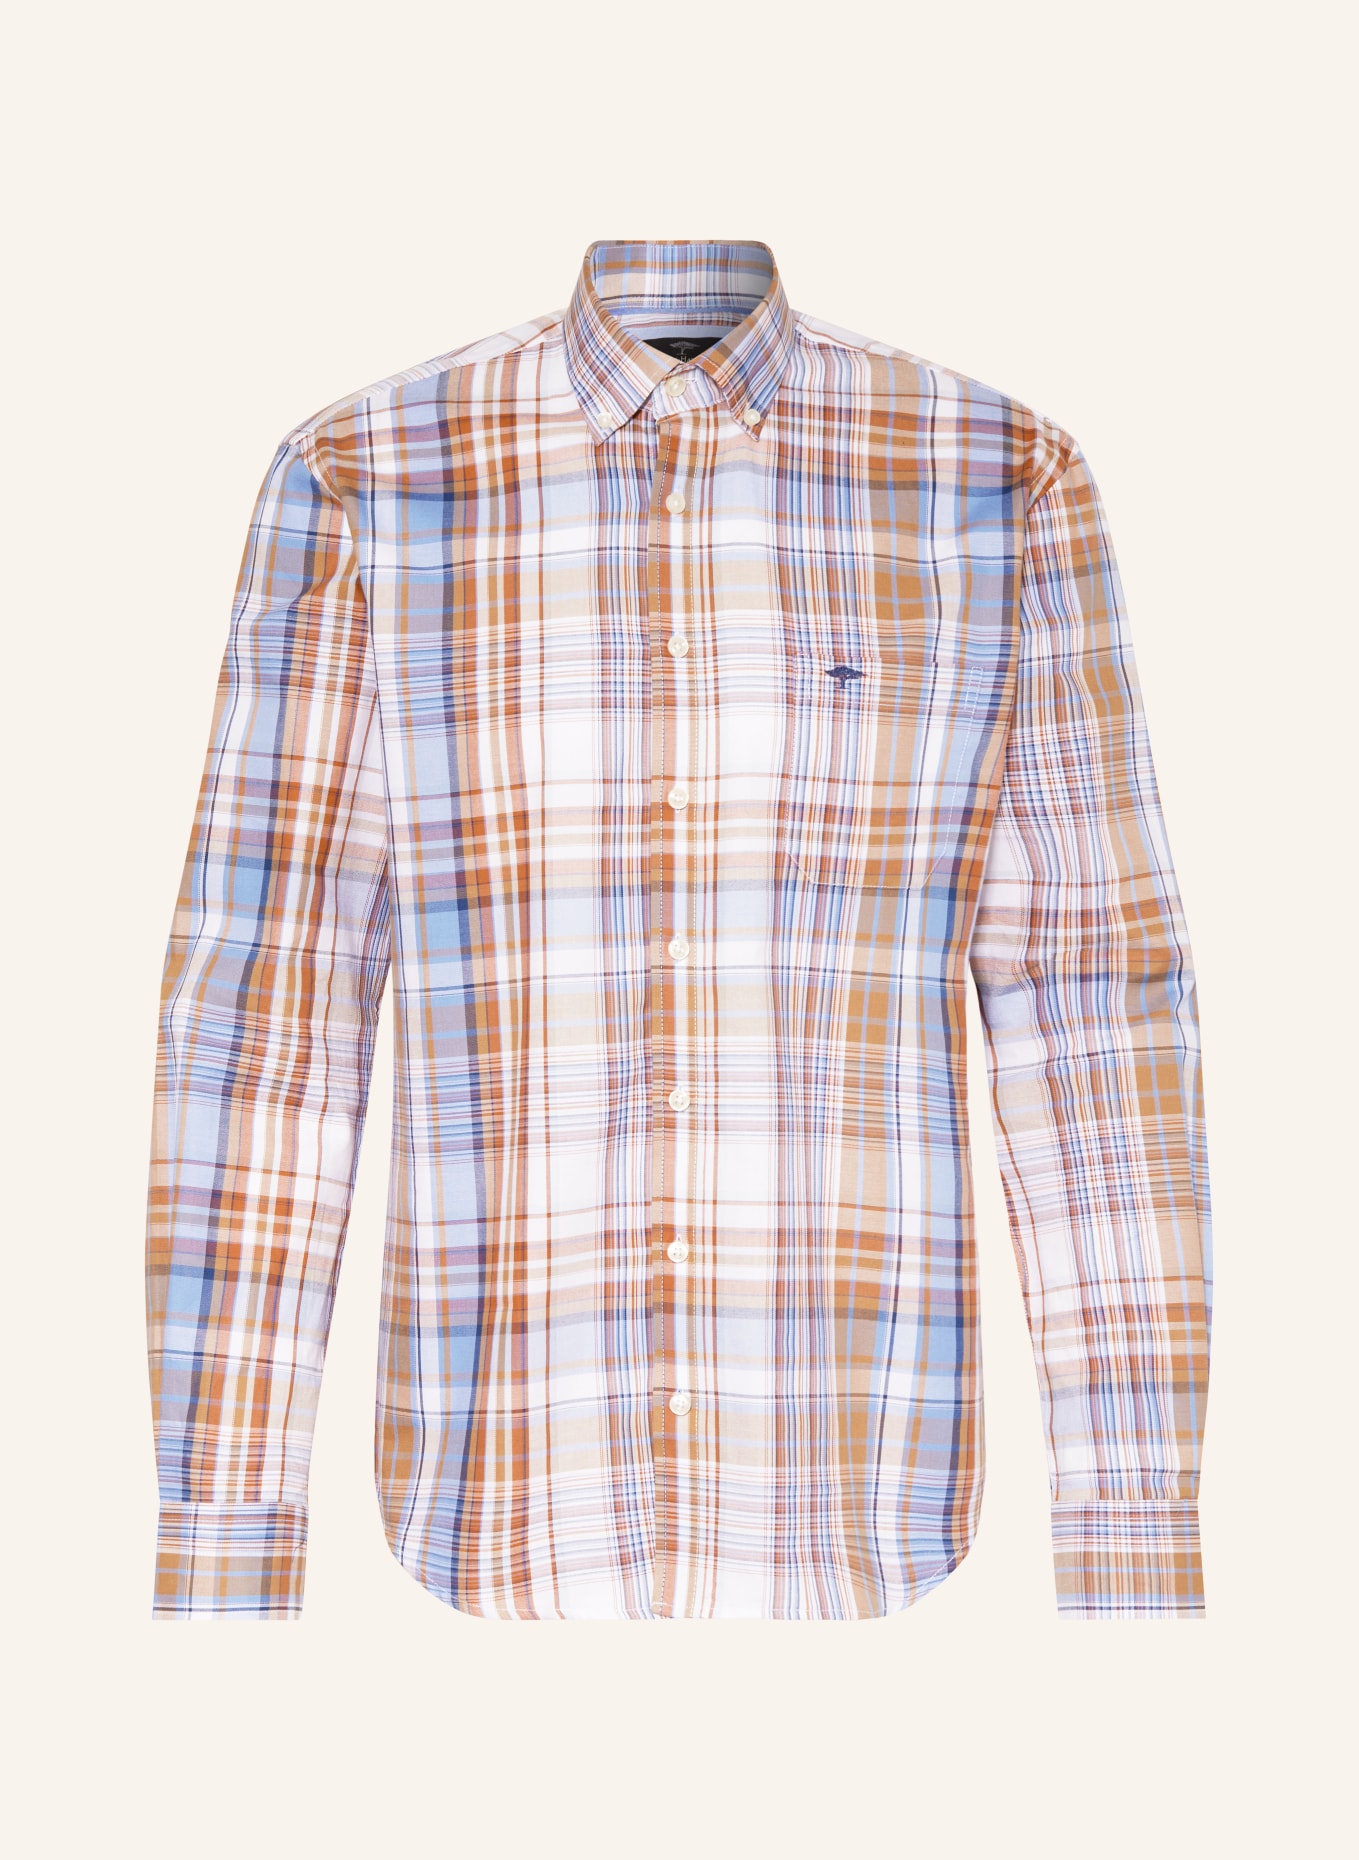 FYNCH-HATTON Shirt regular fit, Color: LIGHT BROWN/ LIGHT BLUE/ WHITE (Image 1)